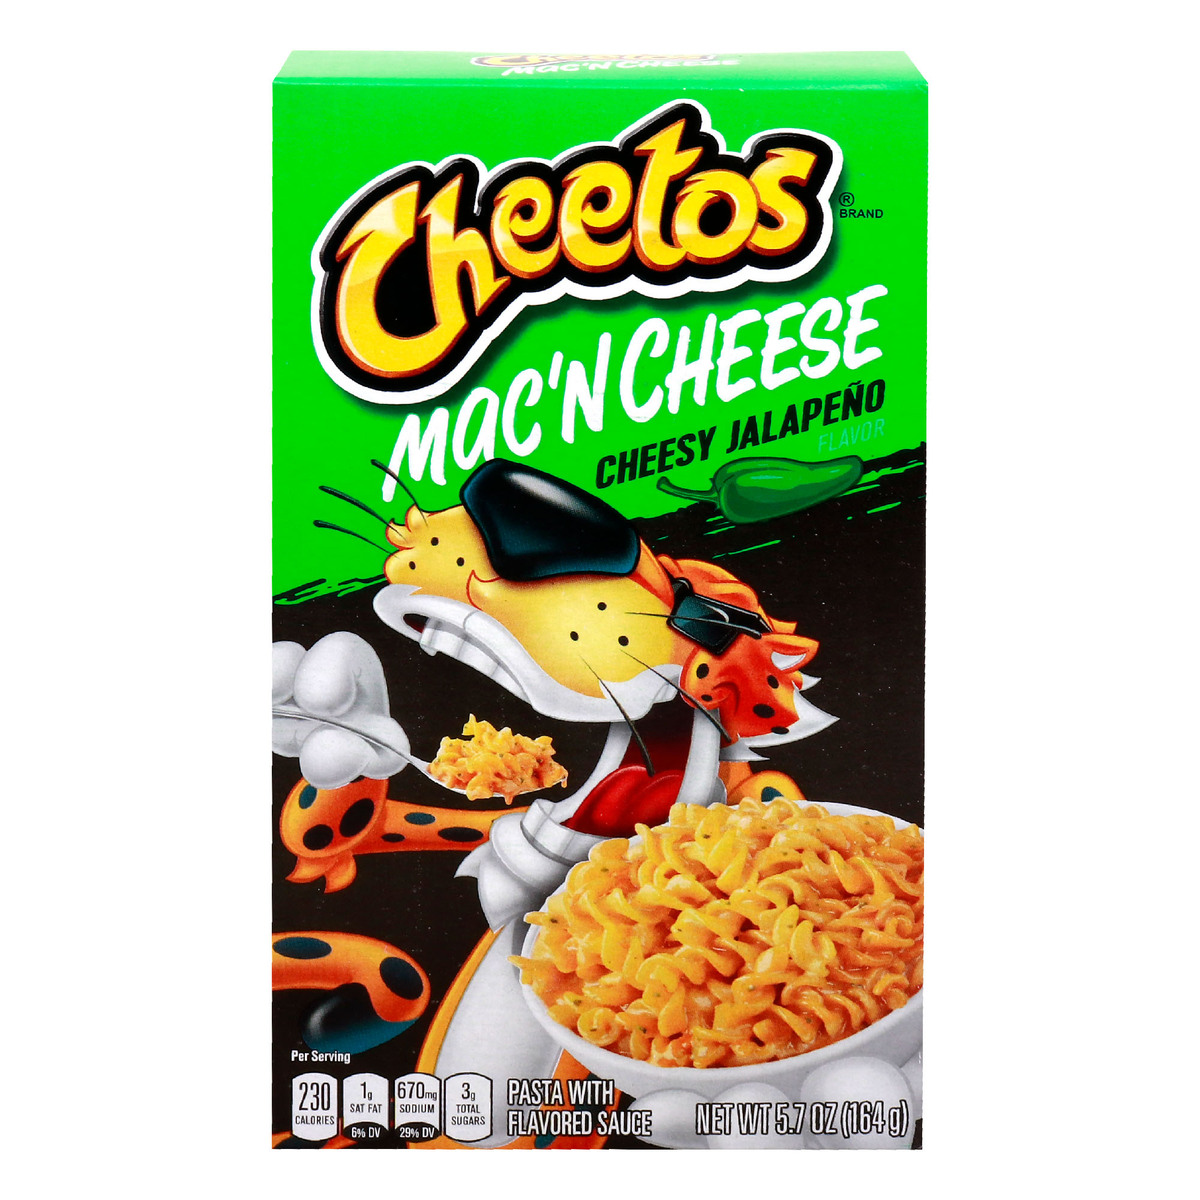 Cheetos Cheesy Jalapeno Mac'N Cheese Pasta 164 g